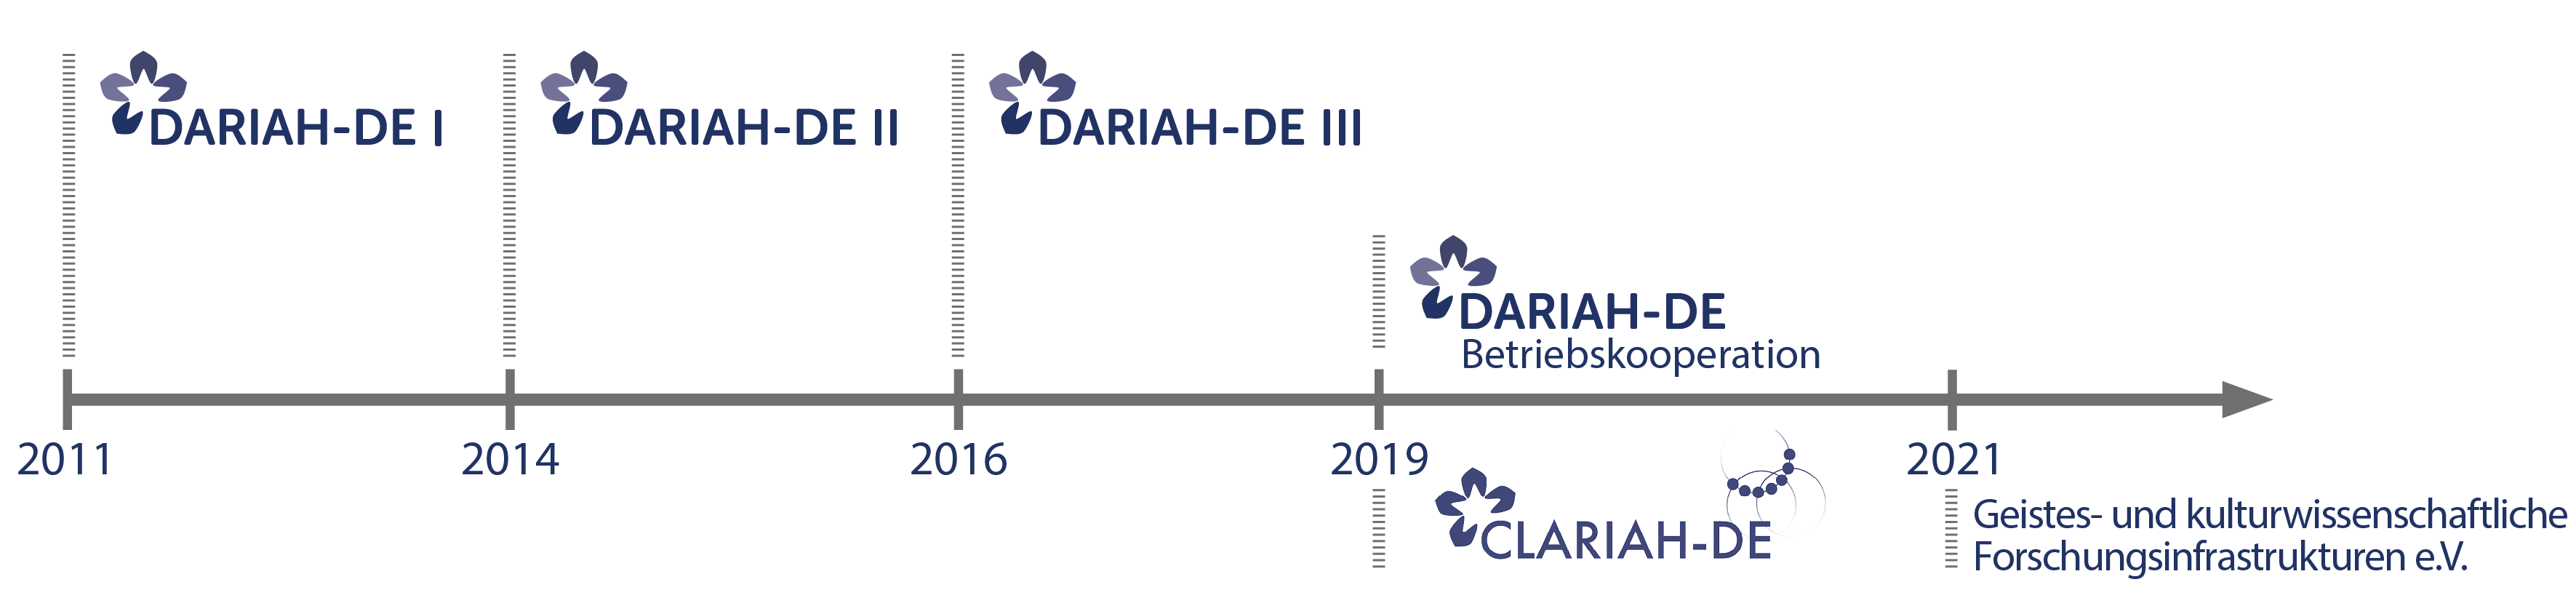 Zeitlicher Überblick: DARIAH-DE und CLARIAH-DE Projektphasen sowie der Verein "Geistes- und kulturwissenschaftliche Forschungsinfrastrukturen e.V."